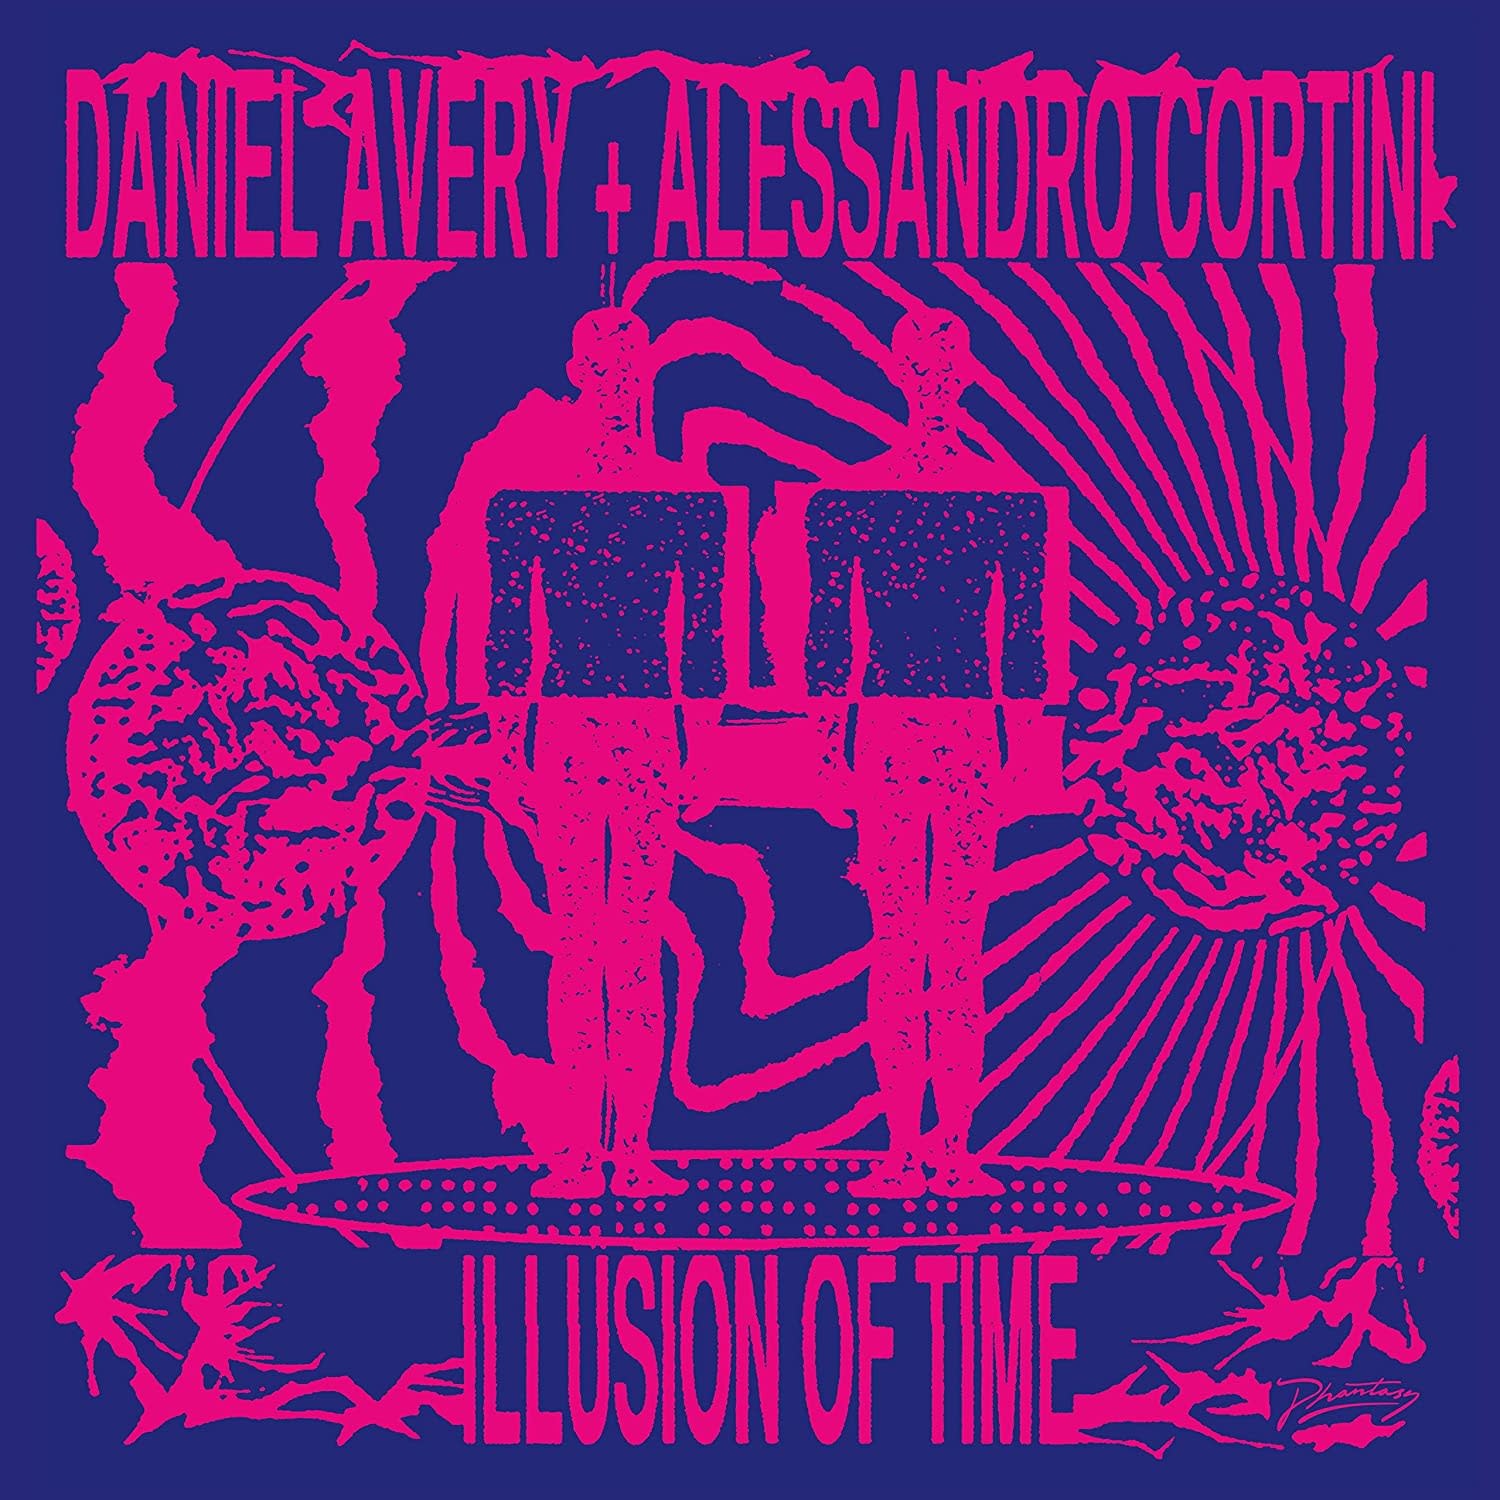 Daniel Avery & Alessandro Cortini ‎– Illusion Of Time